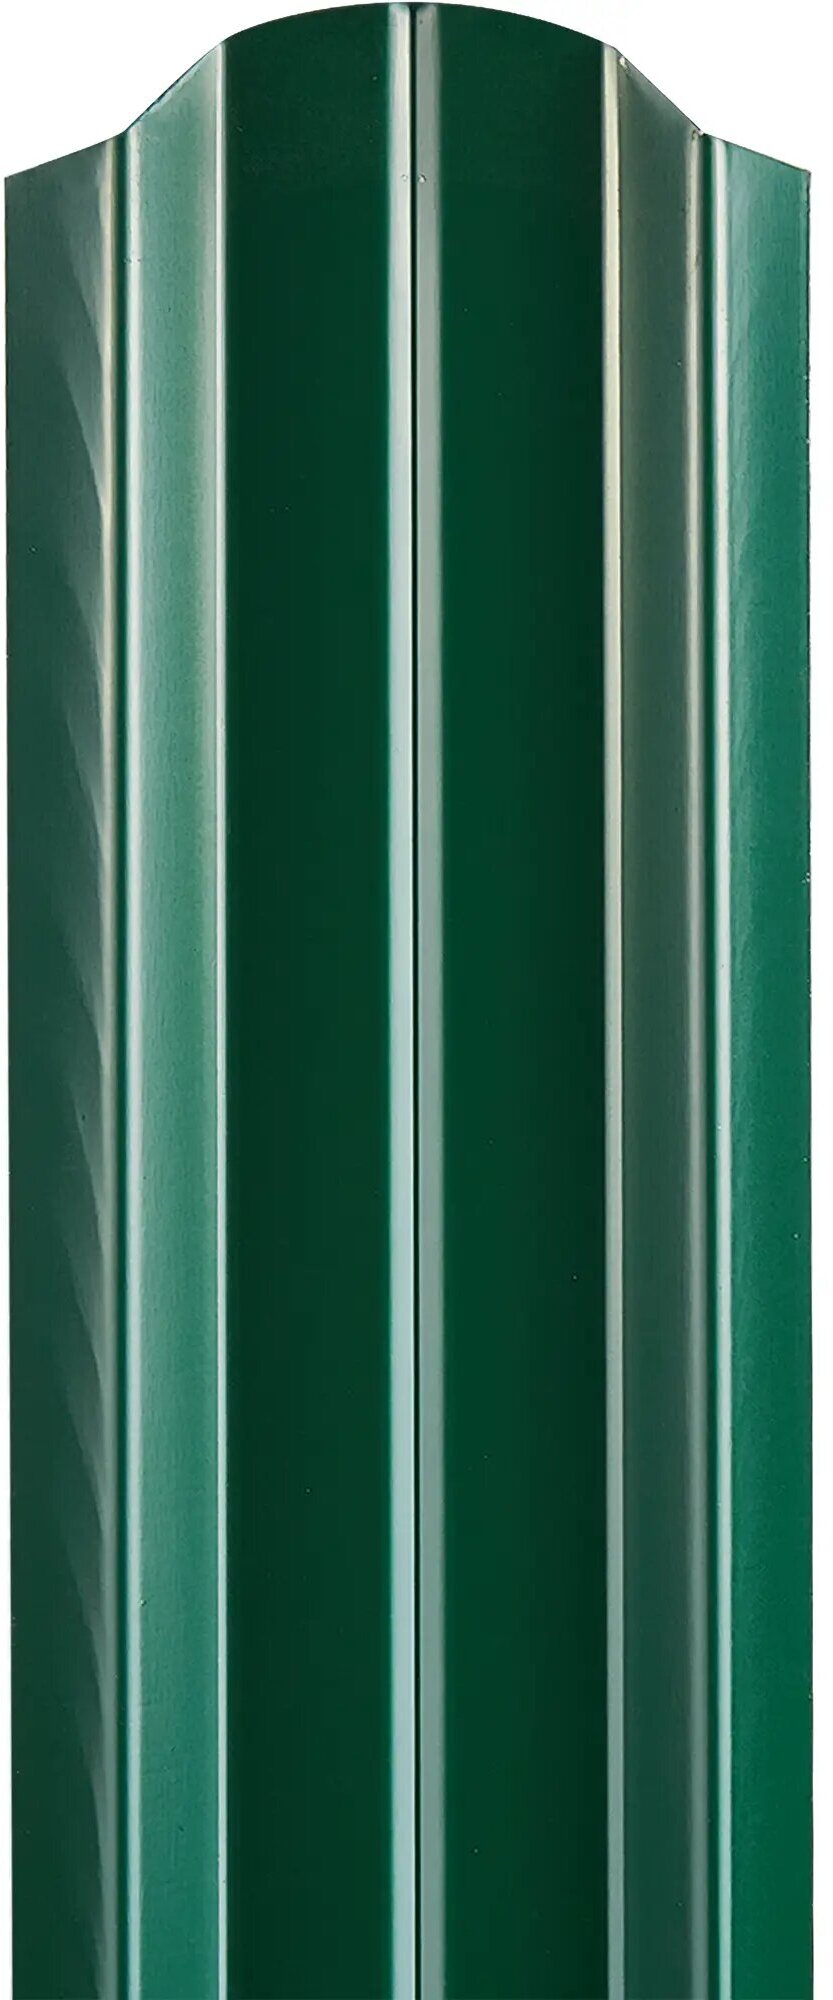 Штакетник односторонний ЭКО-М 76мм 1.5 м 6005 зеленый